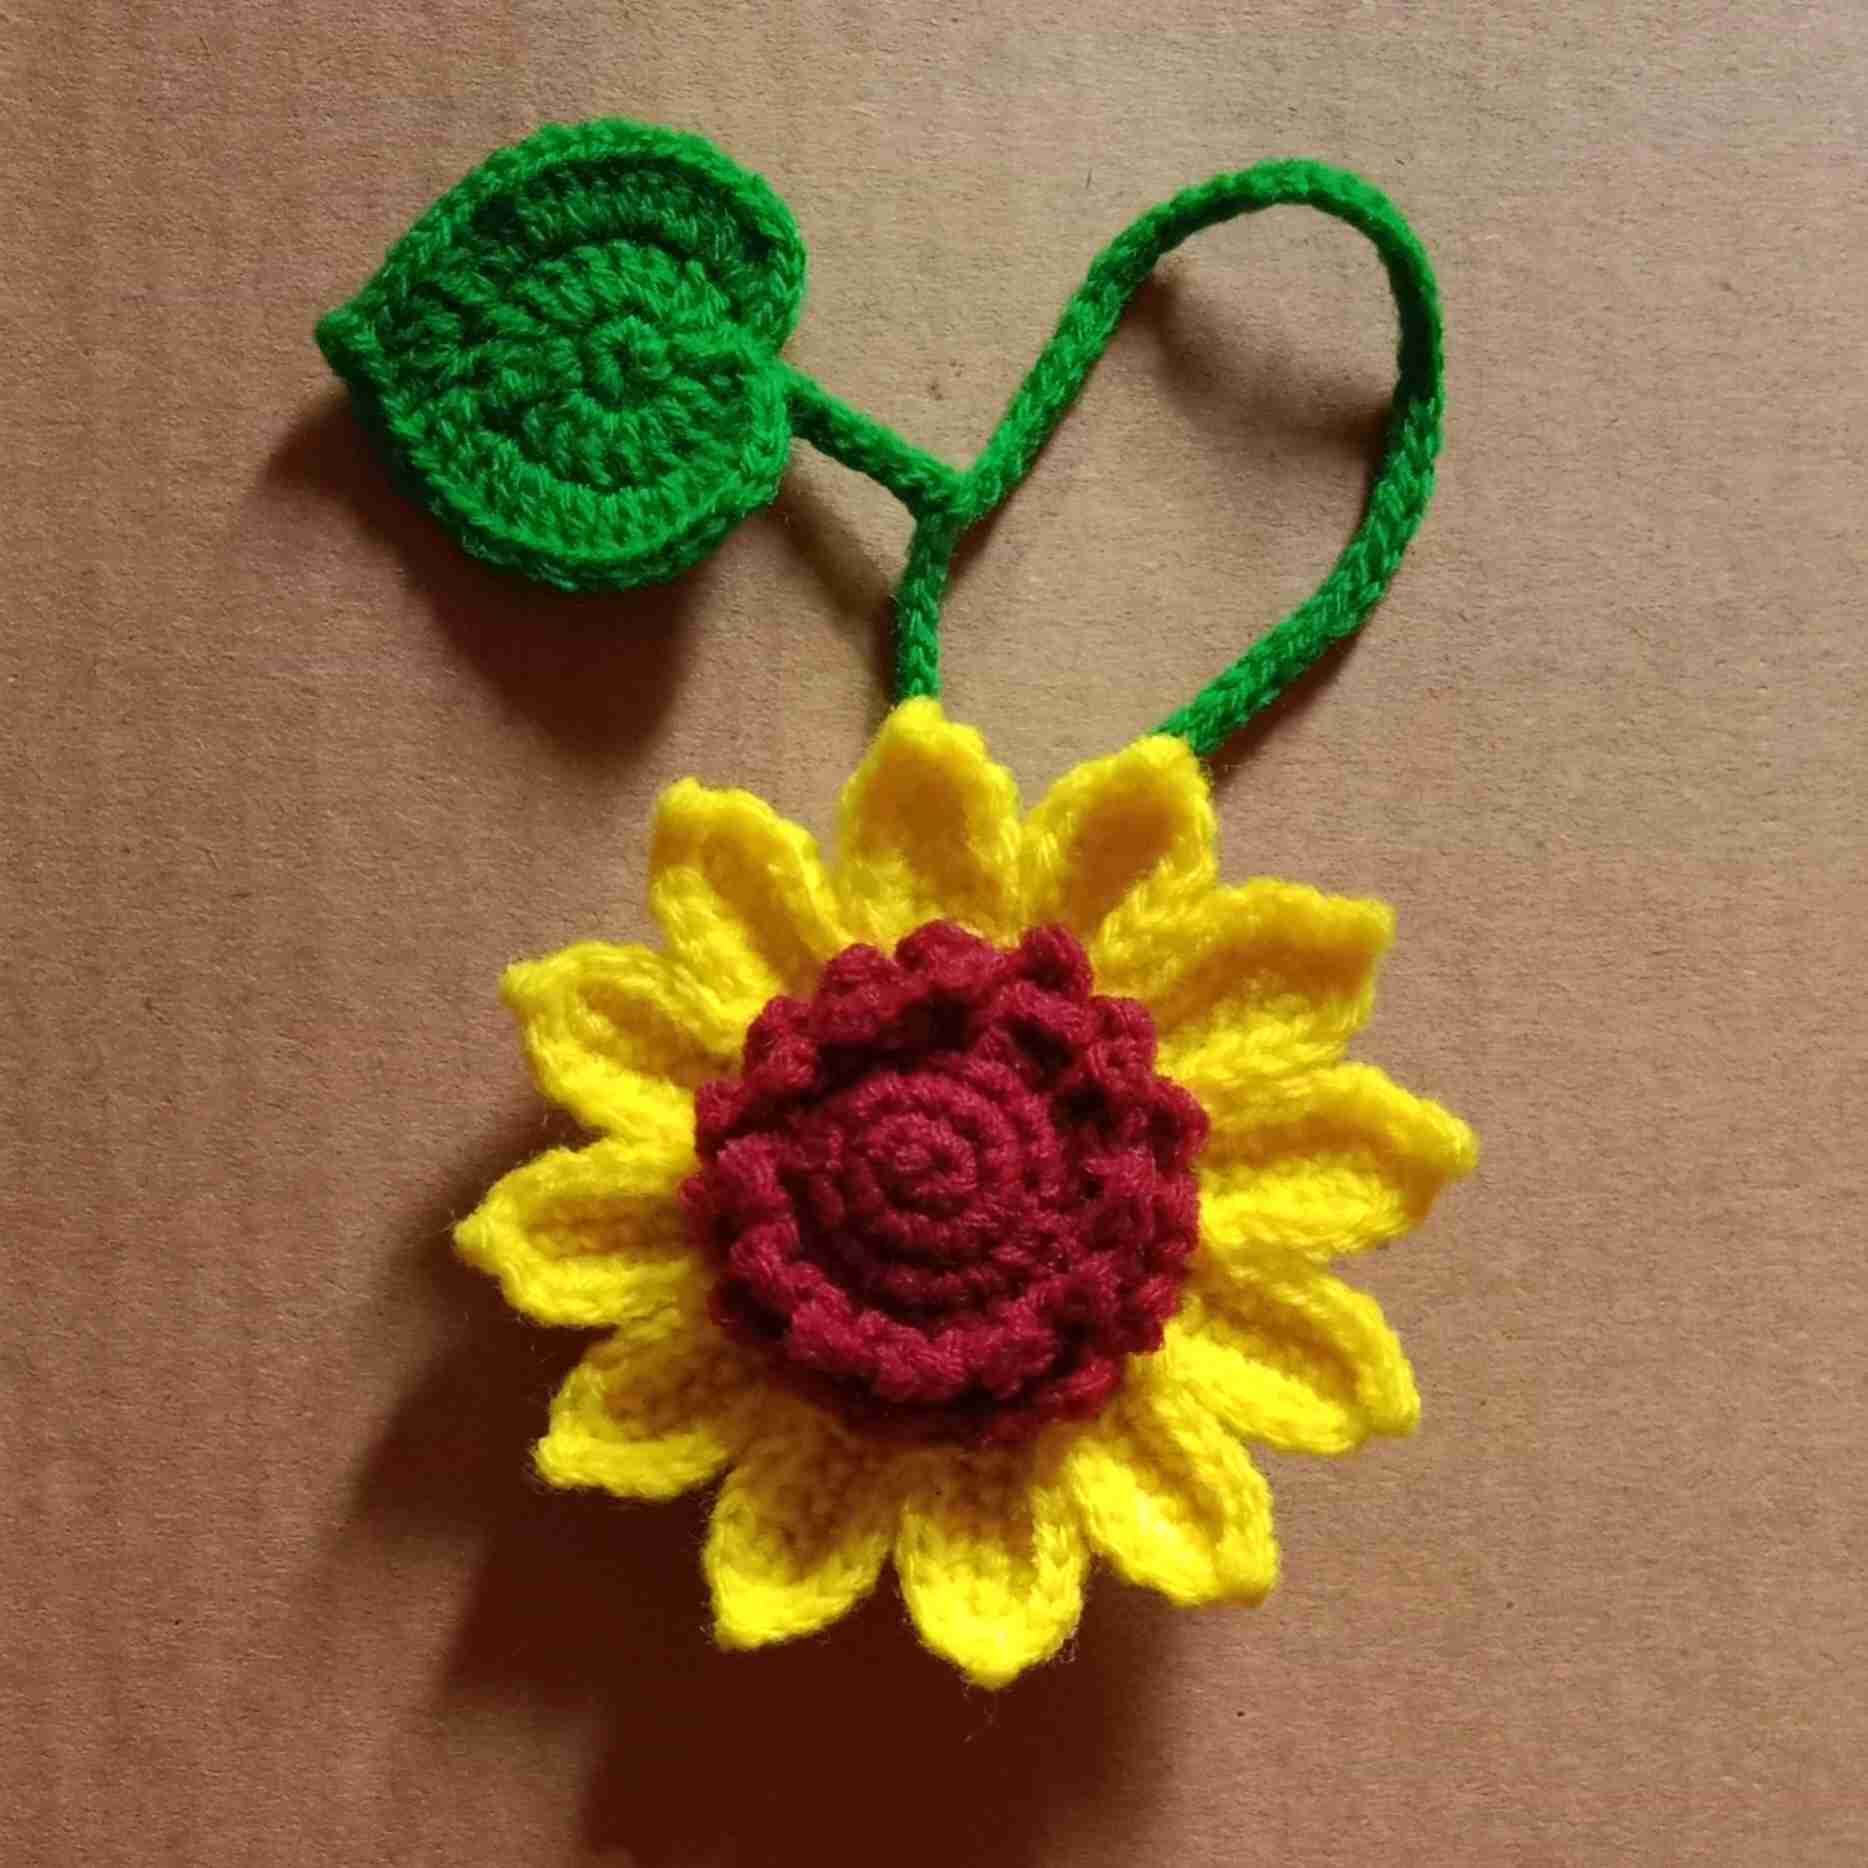 Crochet Woollen Sunflower Keychain